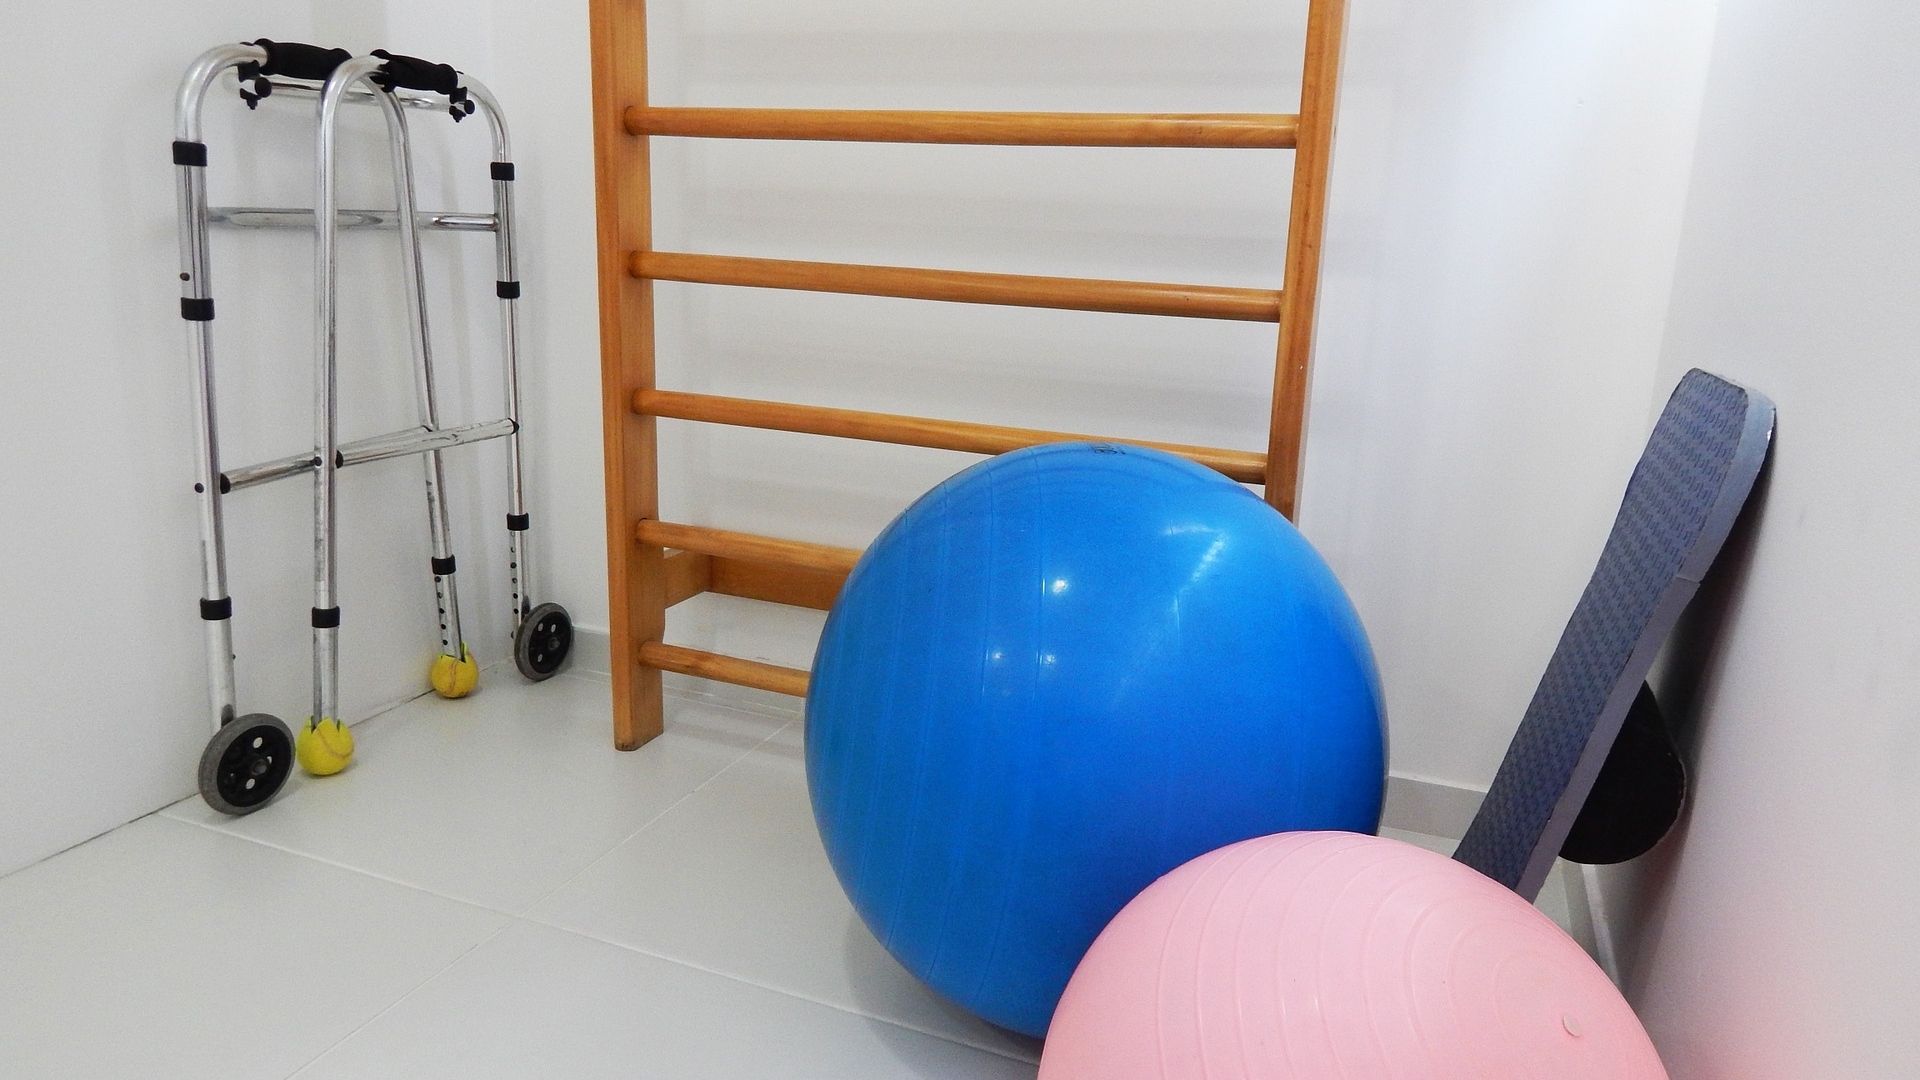 Physiotherapie-Raum mit Sprossenwand und Therapiebällen, Credit: Pixabay